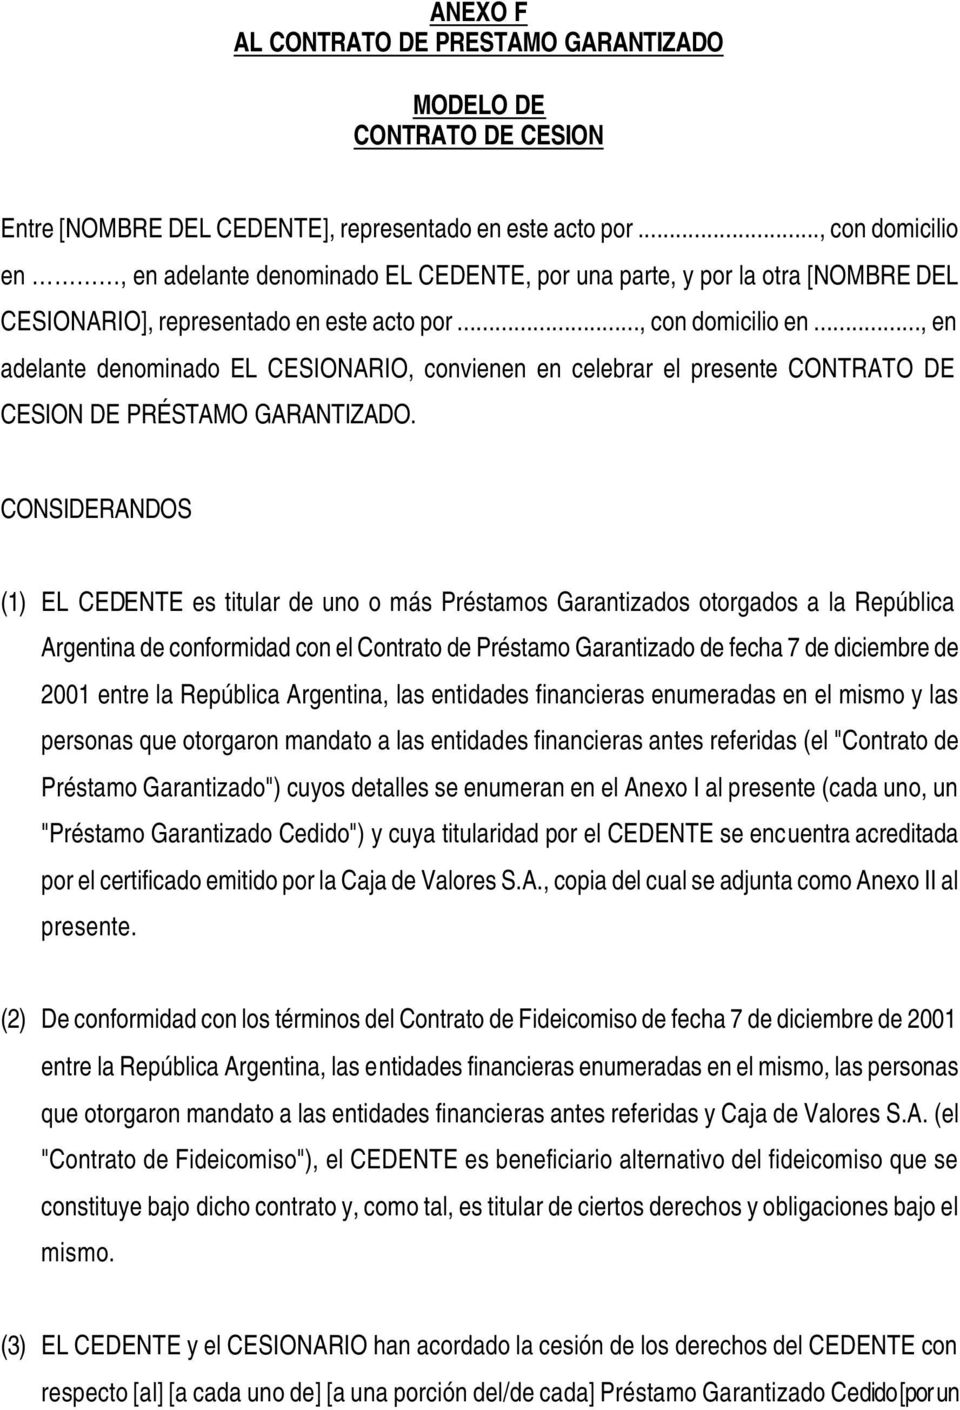 CONSIDERANDOS (1) EL CEDENTE es titular de uno o más Préstamos Garantizados otorgados a la República Argentina de conformidad con el Contrato de Préstamo Garantizado de fecha 7 de diciembre de 2001